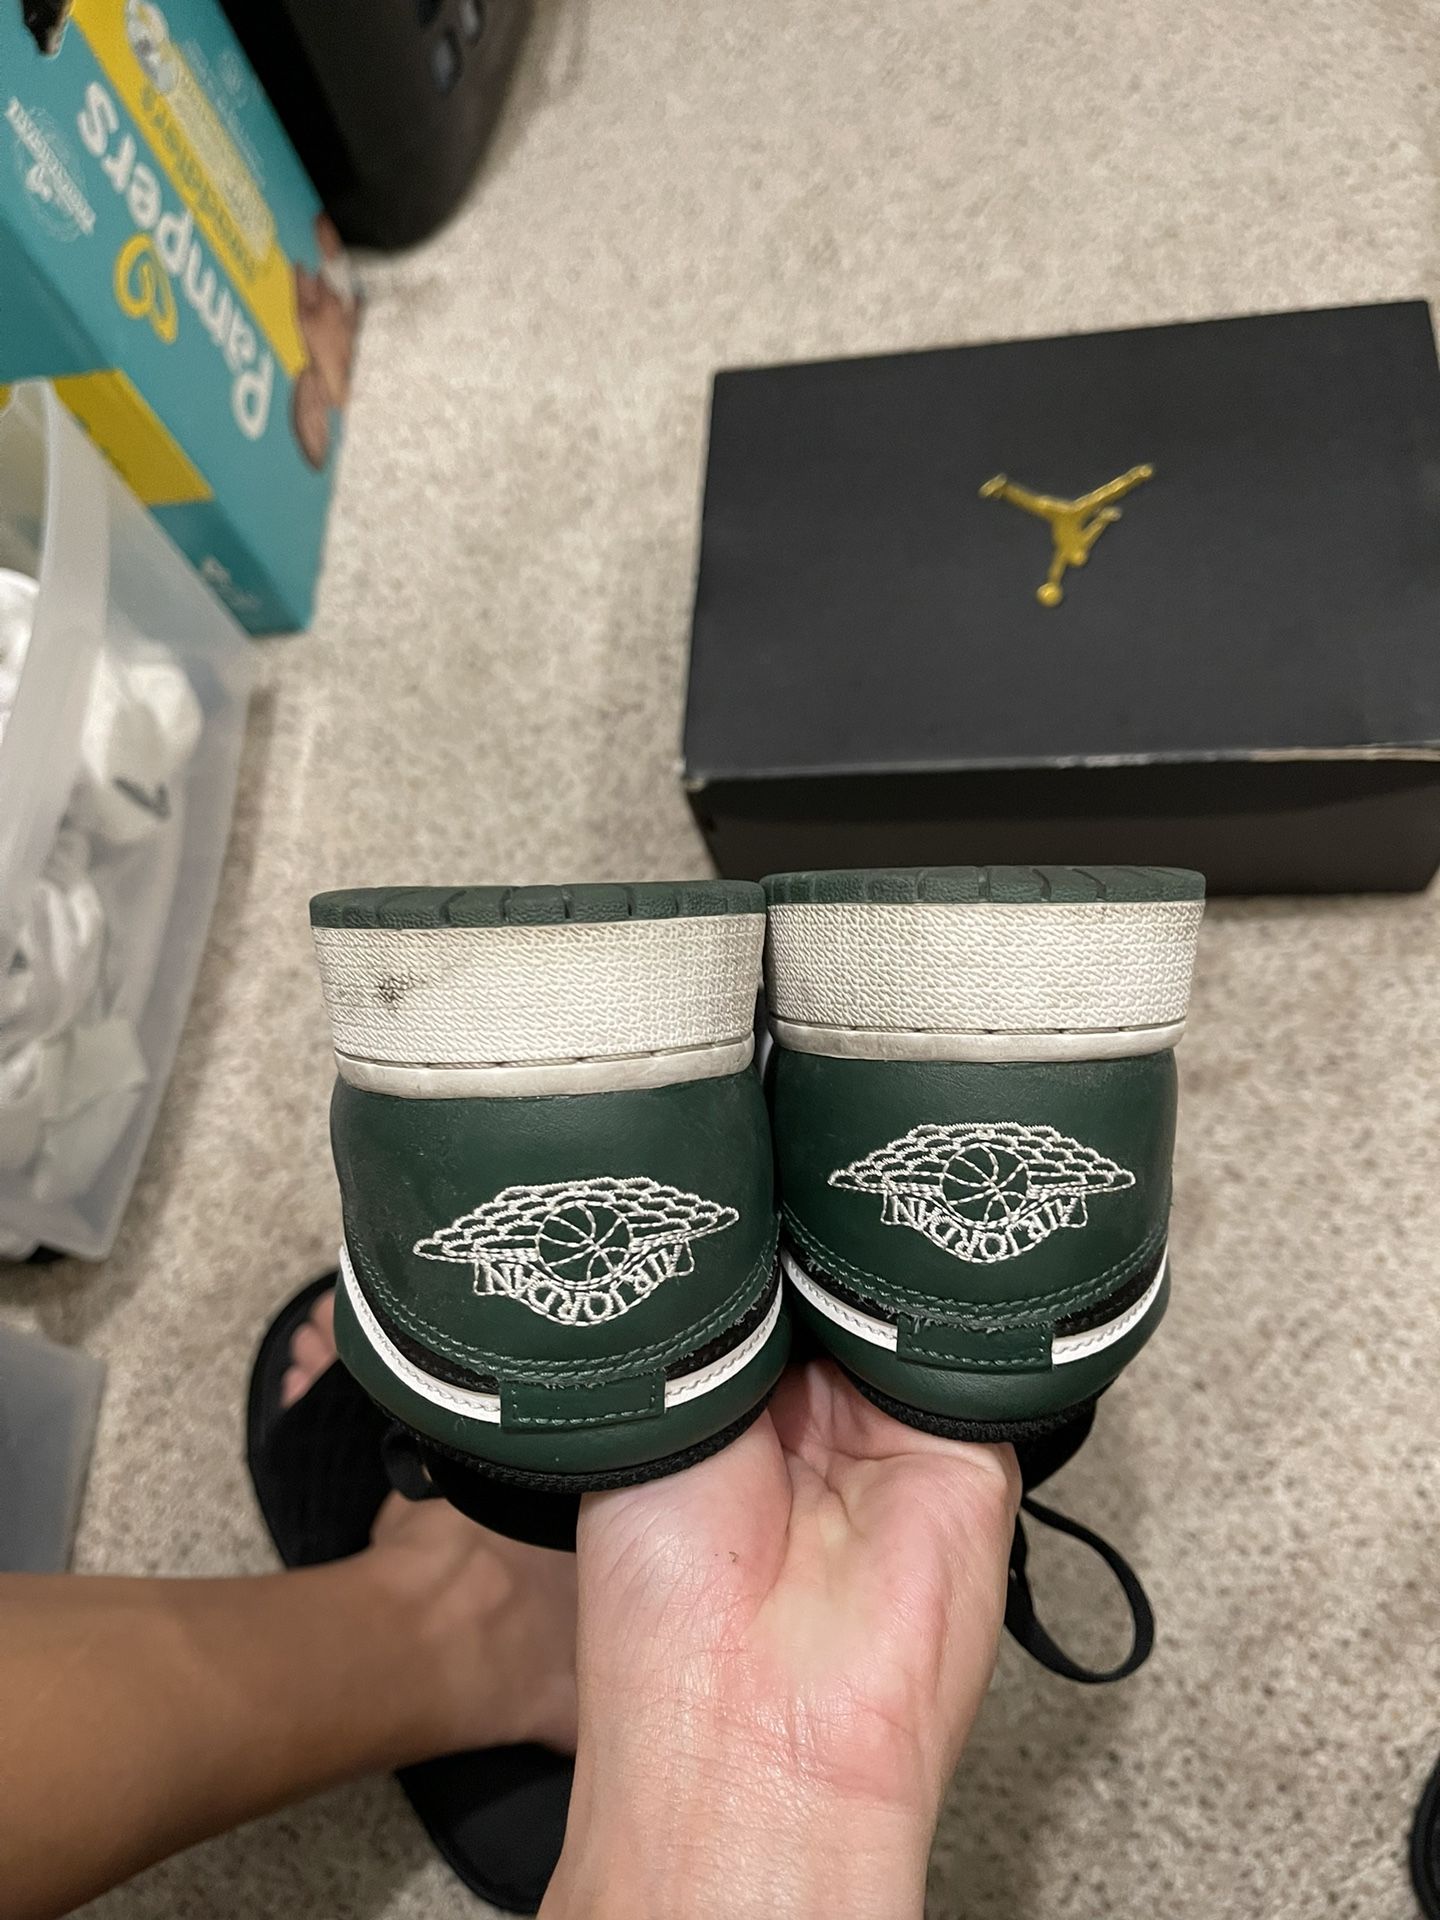 Jordan 1 Low Green Toe Size 6.5Y Used Pair